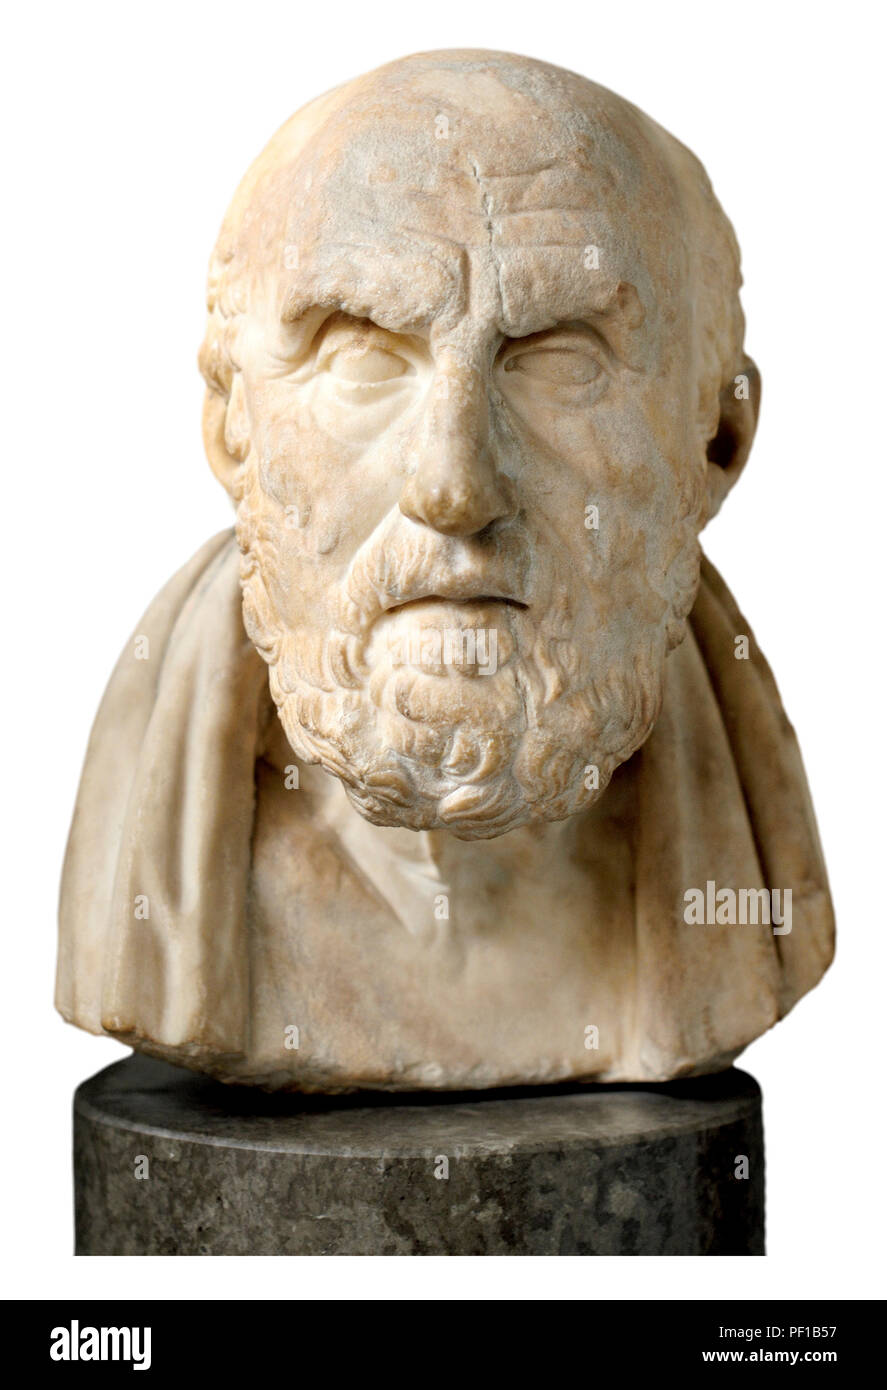 Marmorbüste von chrysippos (griechischer Philosoph 280-205 v. Chr.: c) Mitglied der stoischen Schule der Philosophie. British Museum, Bloomsbury, London, England, UK. Stockfoto